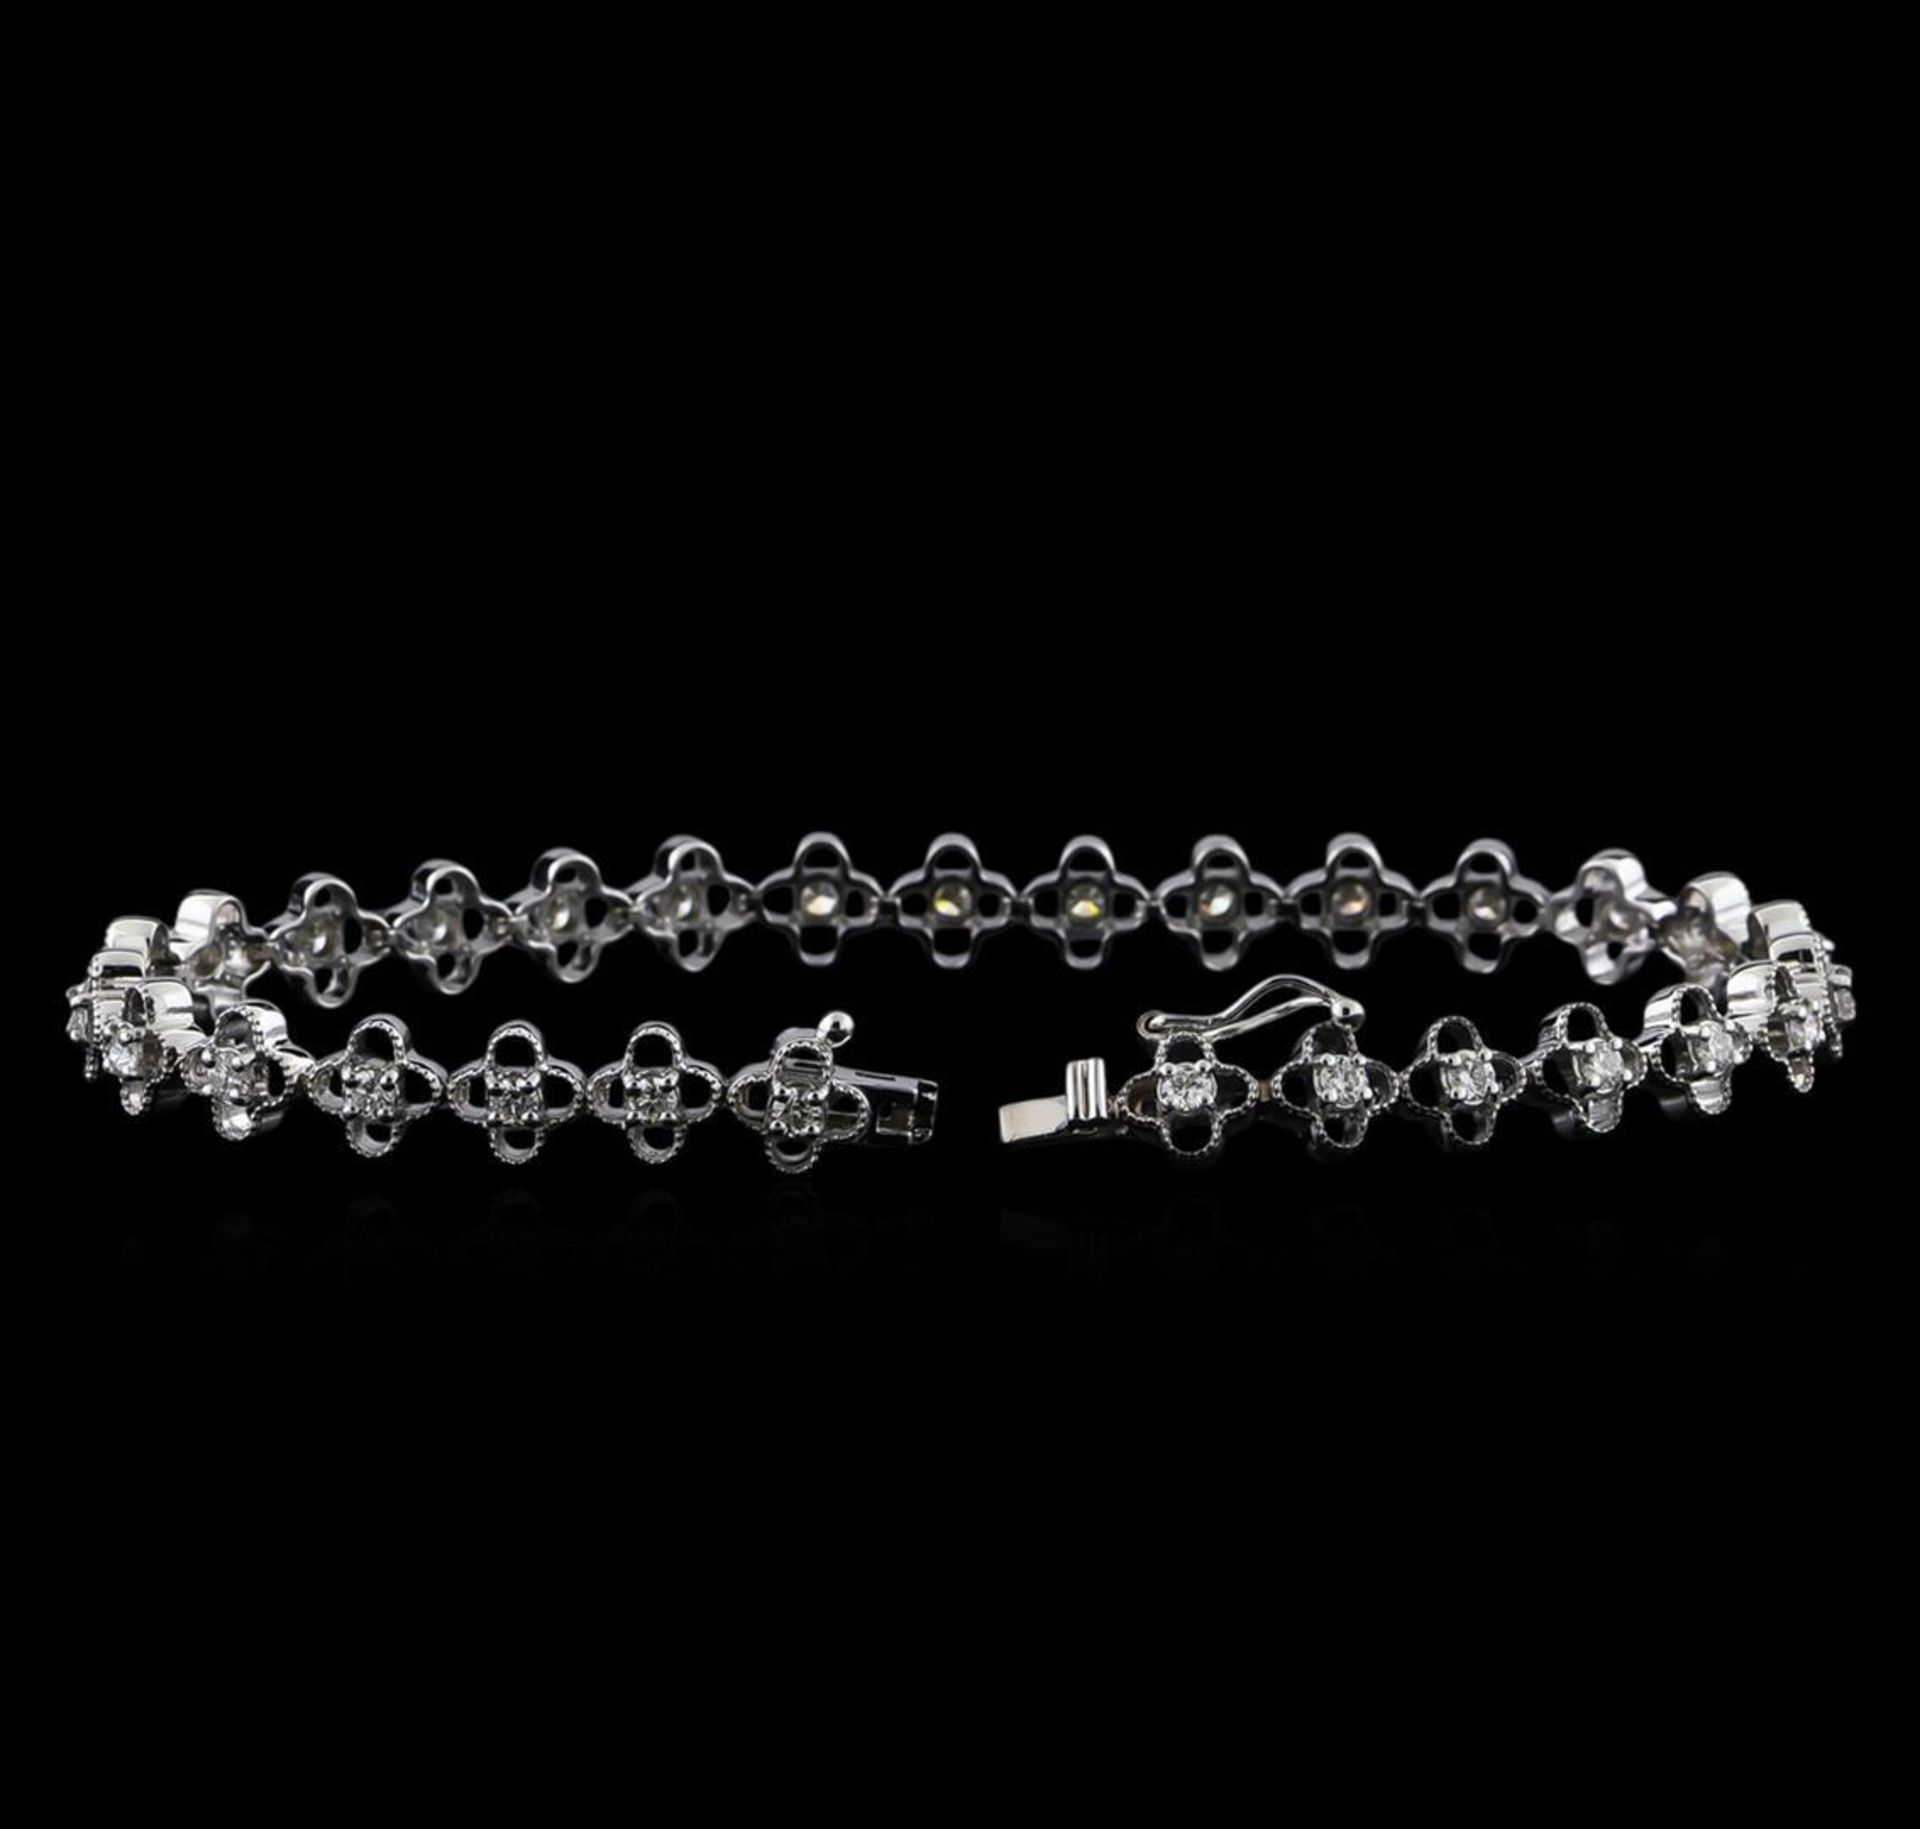 1.13 ctw Diamond Bracelet - 14KT White Gold - Image 3 of 4